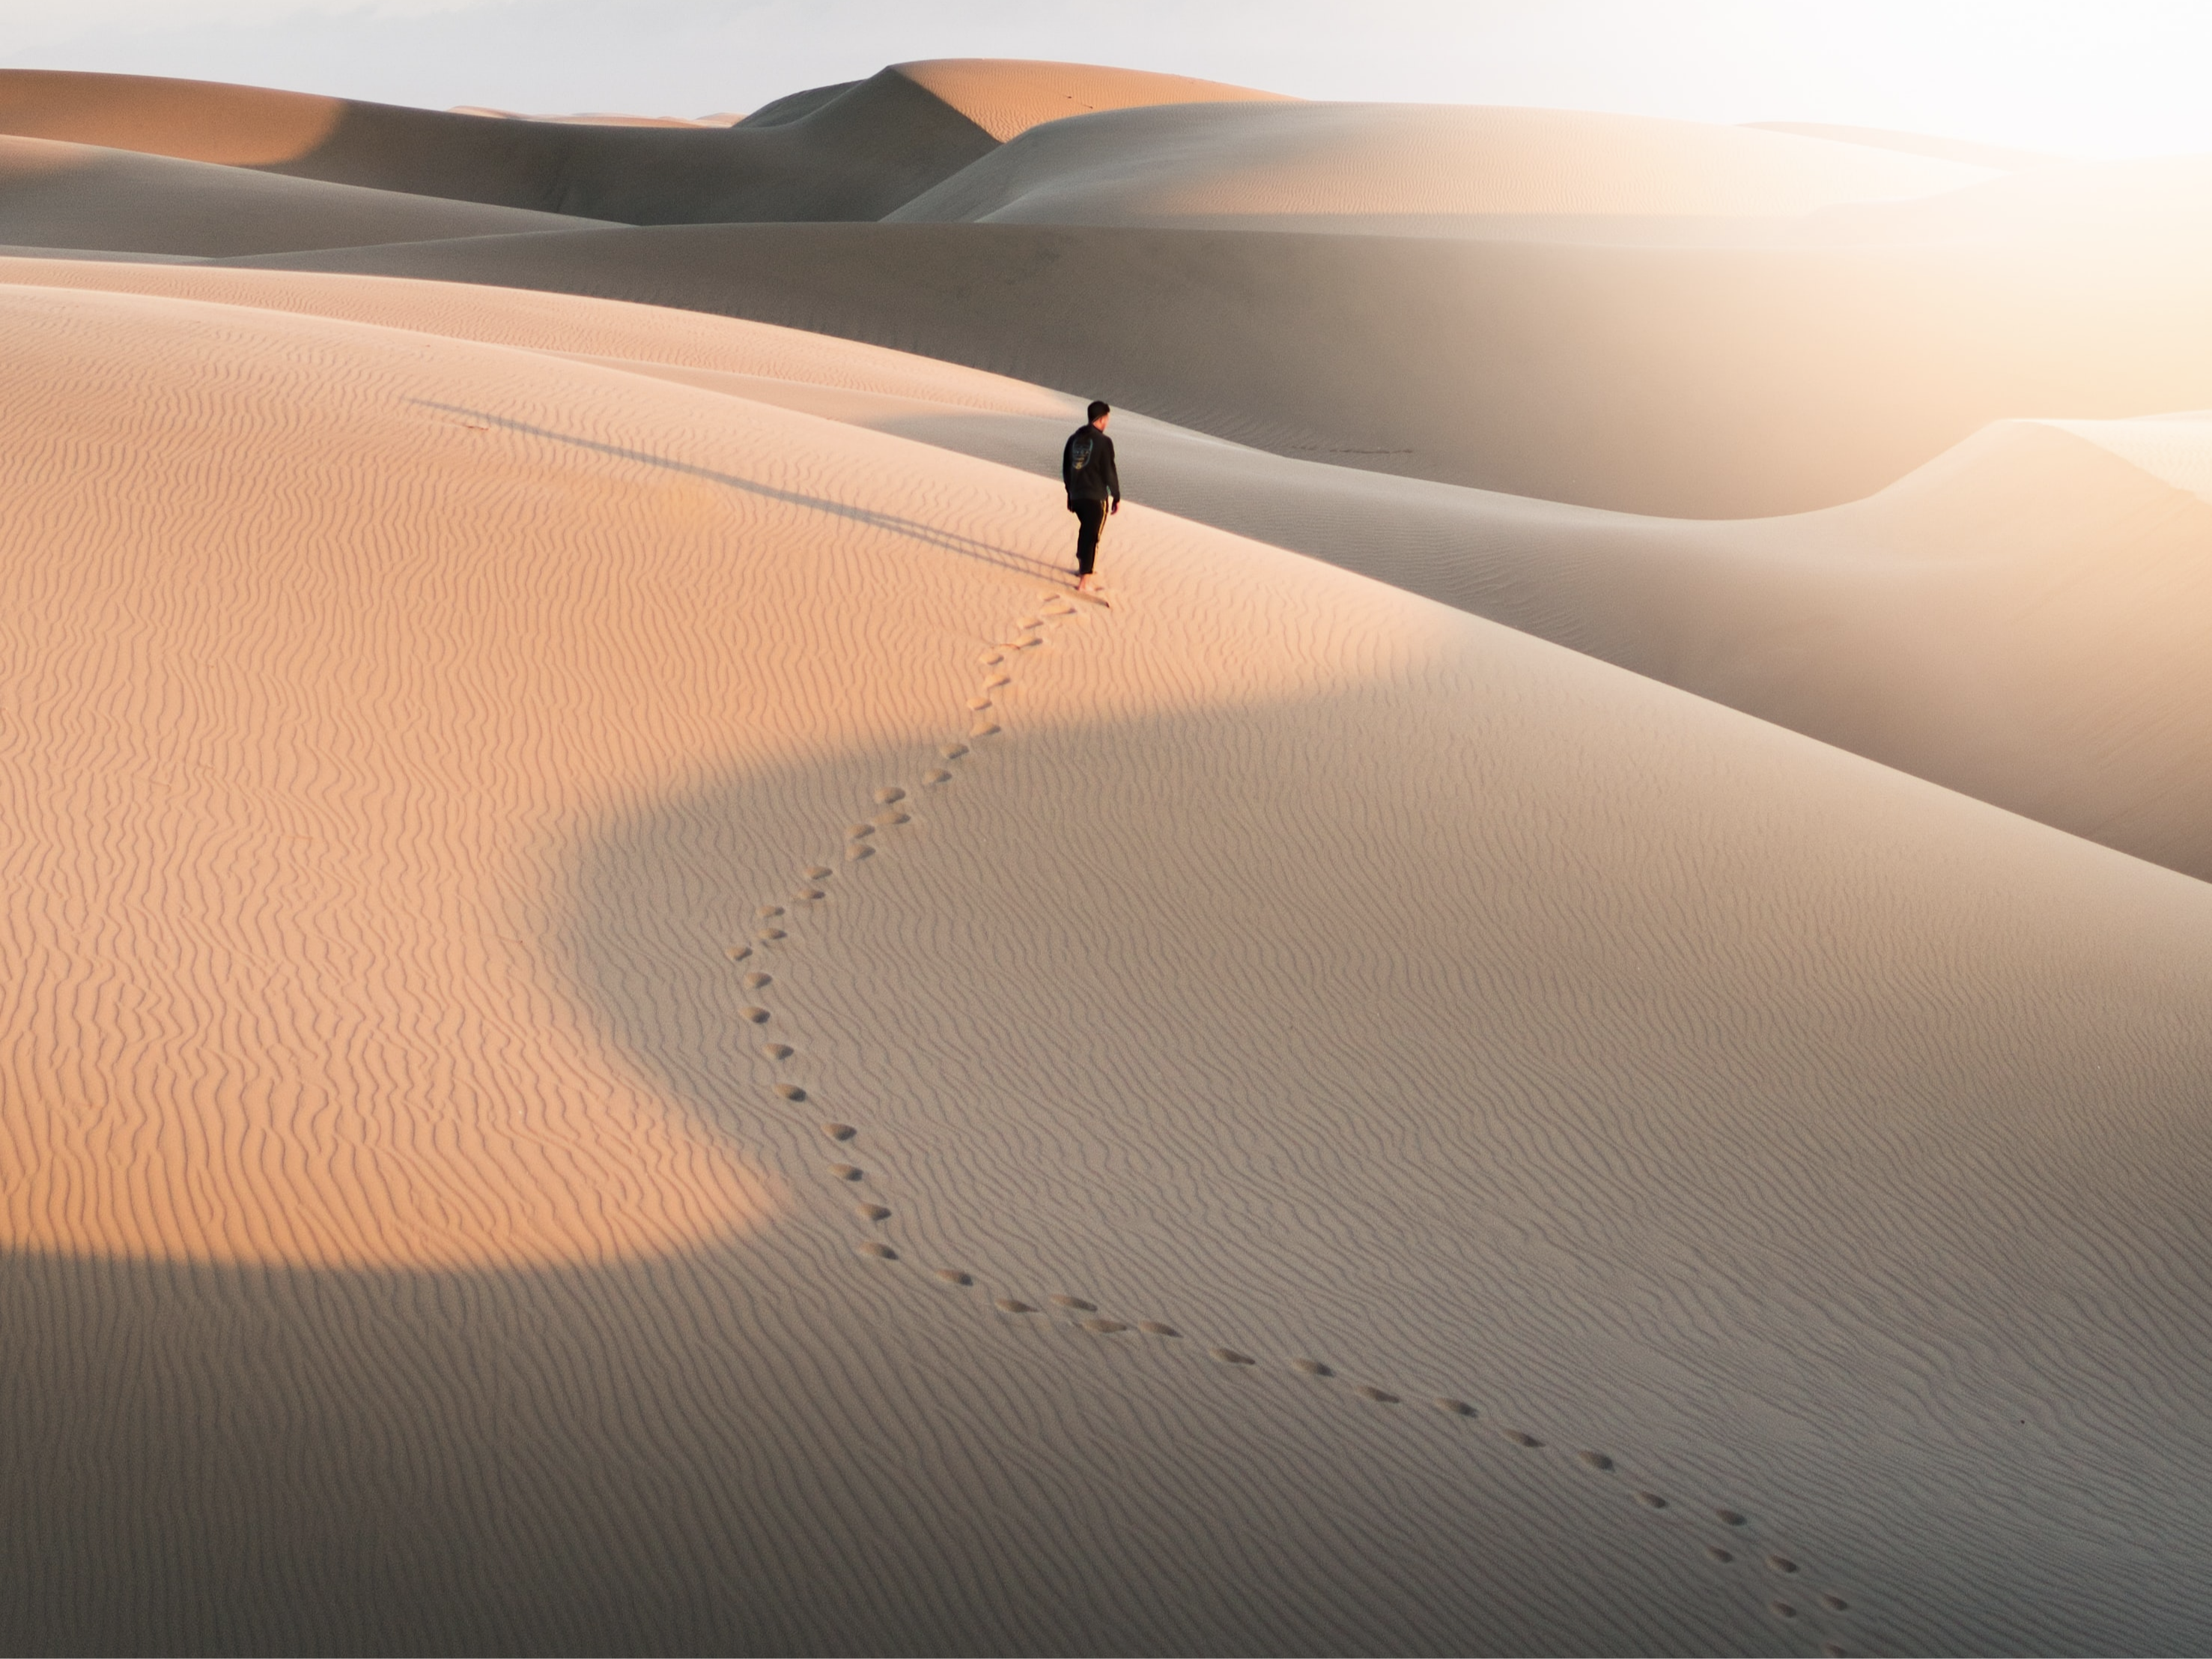 Footsteps through a desert